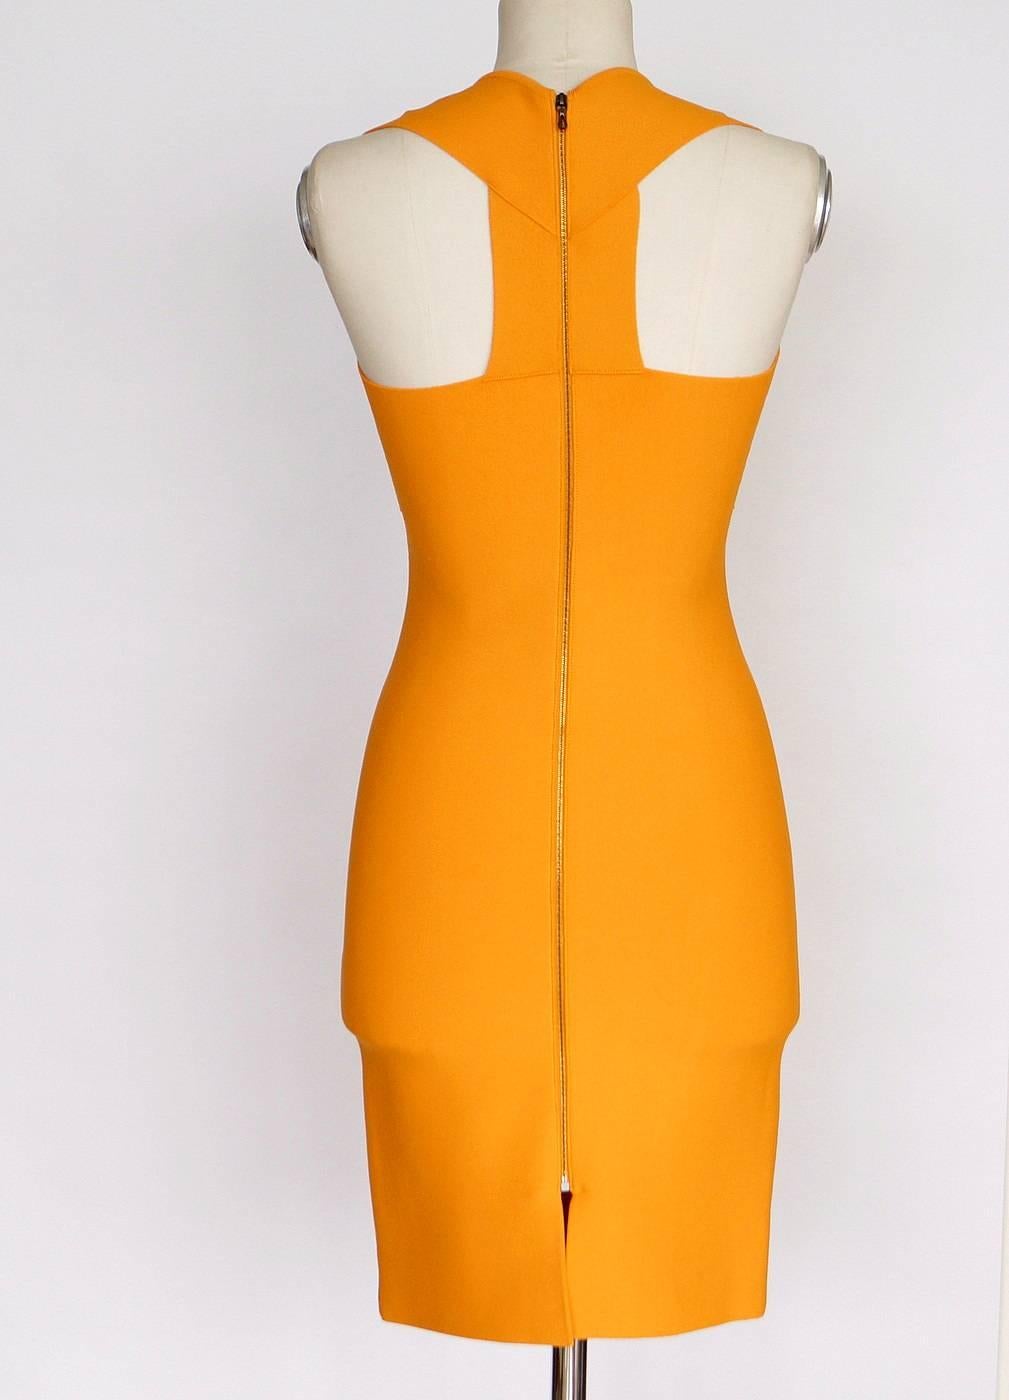 Orange ROLAND MOURET Dress Golden Guinevere Bandage Dress 40 nwt